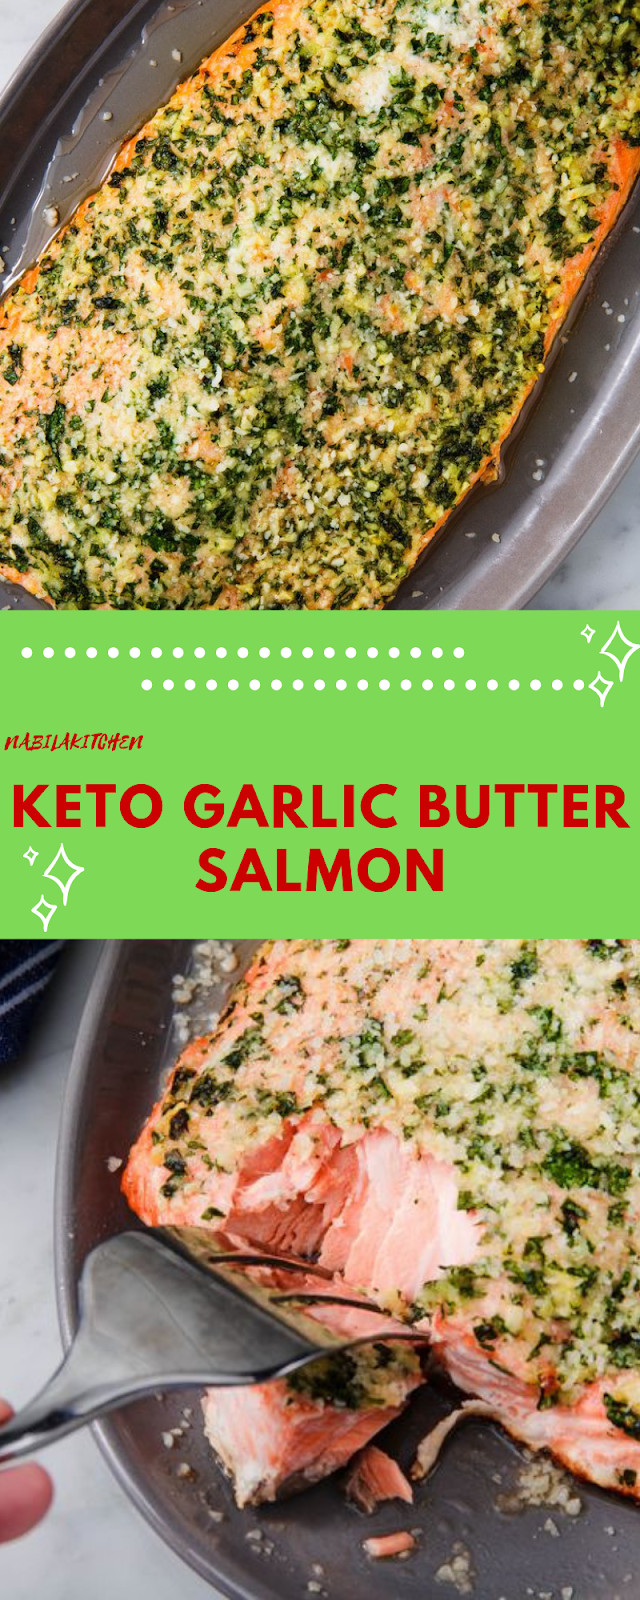 Garlic Butter Salmon Keto
 Keto Garlic Butter Salmon Nabila Kitchen